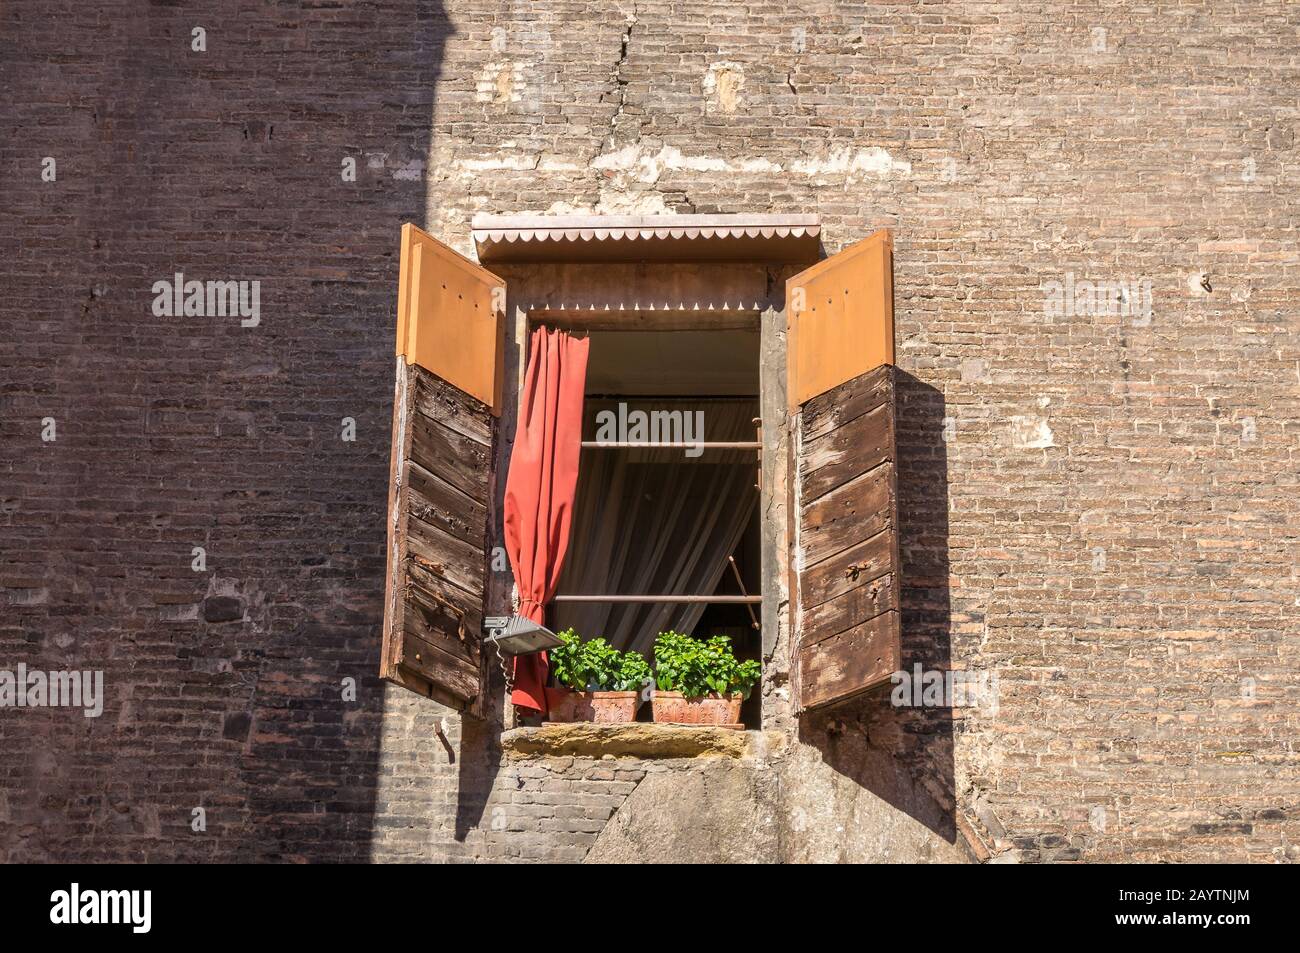 Mur de briques avec fenêtre avec stores ouverts et pots de fleurs avec plantes vertes sur le seuil de la fenêtre. Détails architecturaux de l'ancien bâtiment Banque D'Images